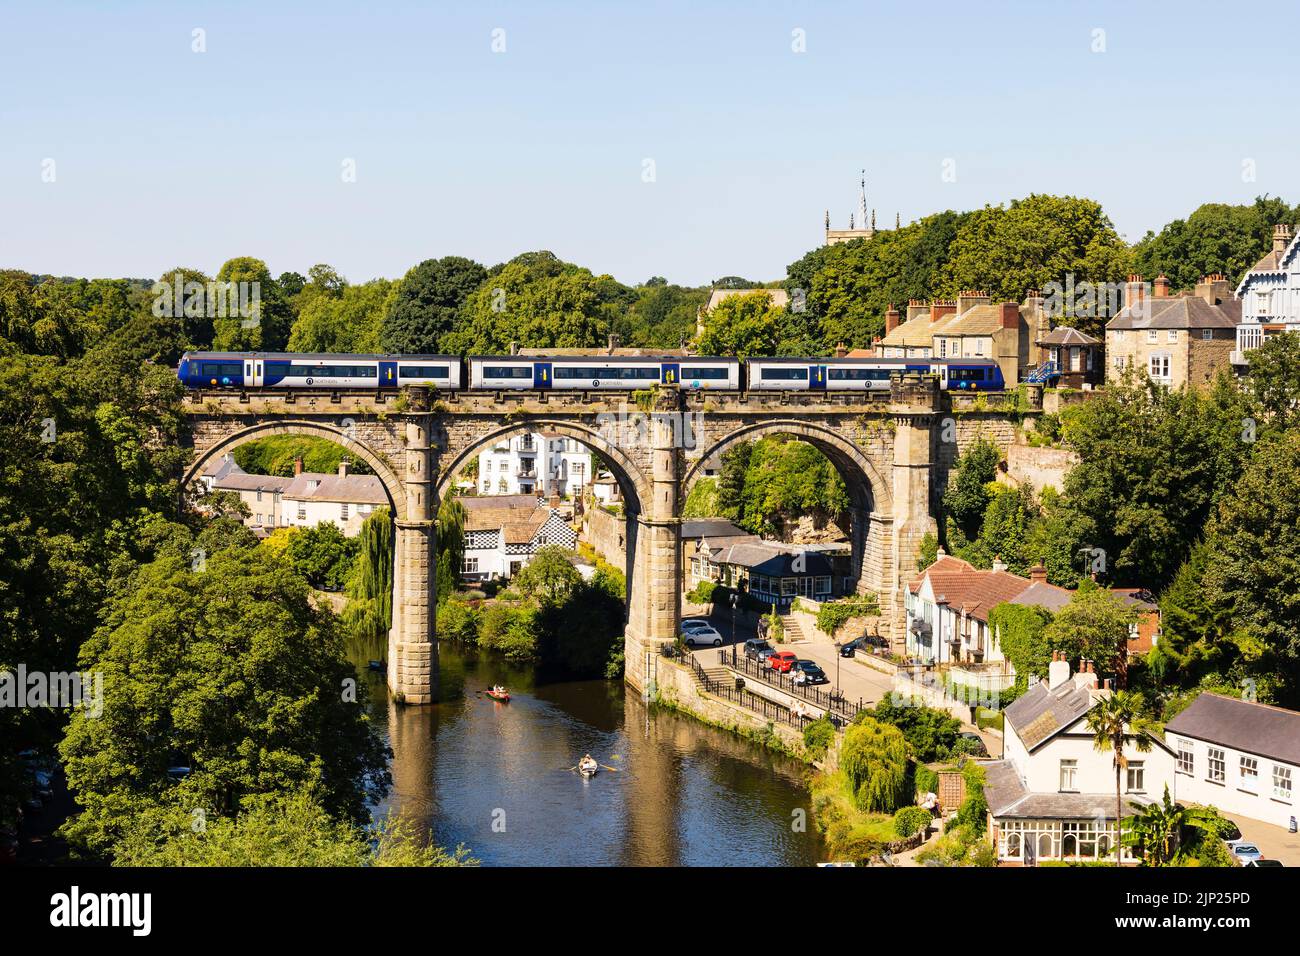 Nordzüge, die den Eisenbahnviadukt über den Fluss Nidd, Knaresborough, North Yorkshire, England, überqueren. Heißer Sommertag mit Menschen auf Booten in der r Stockfoto